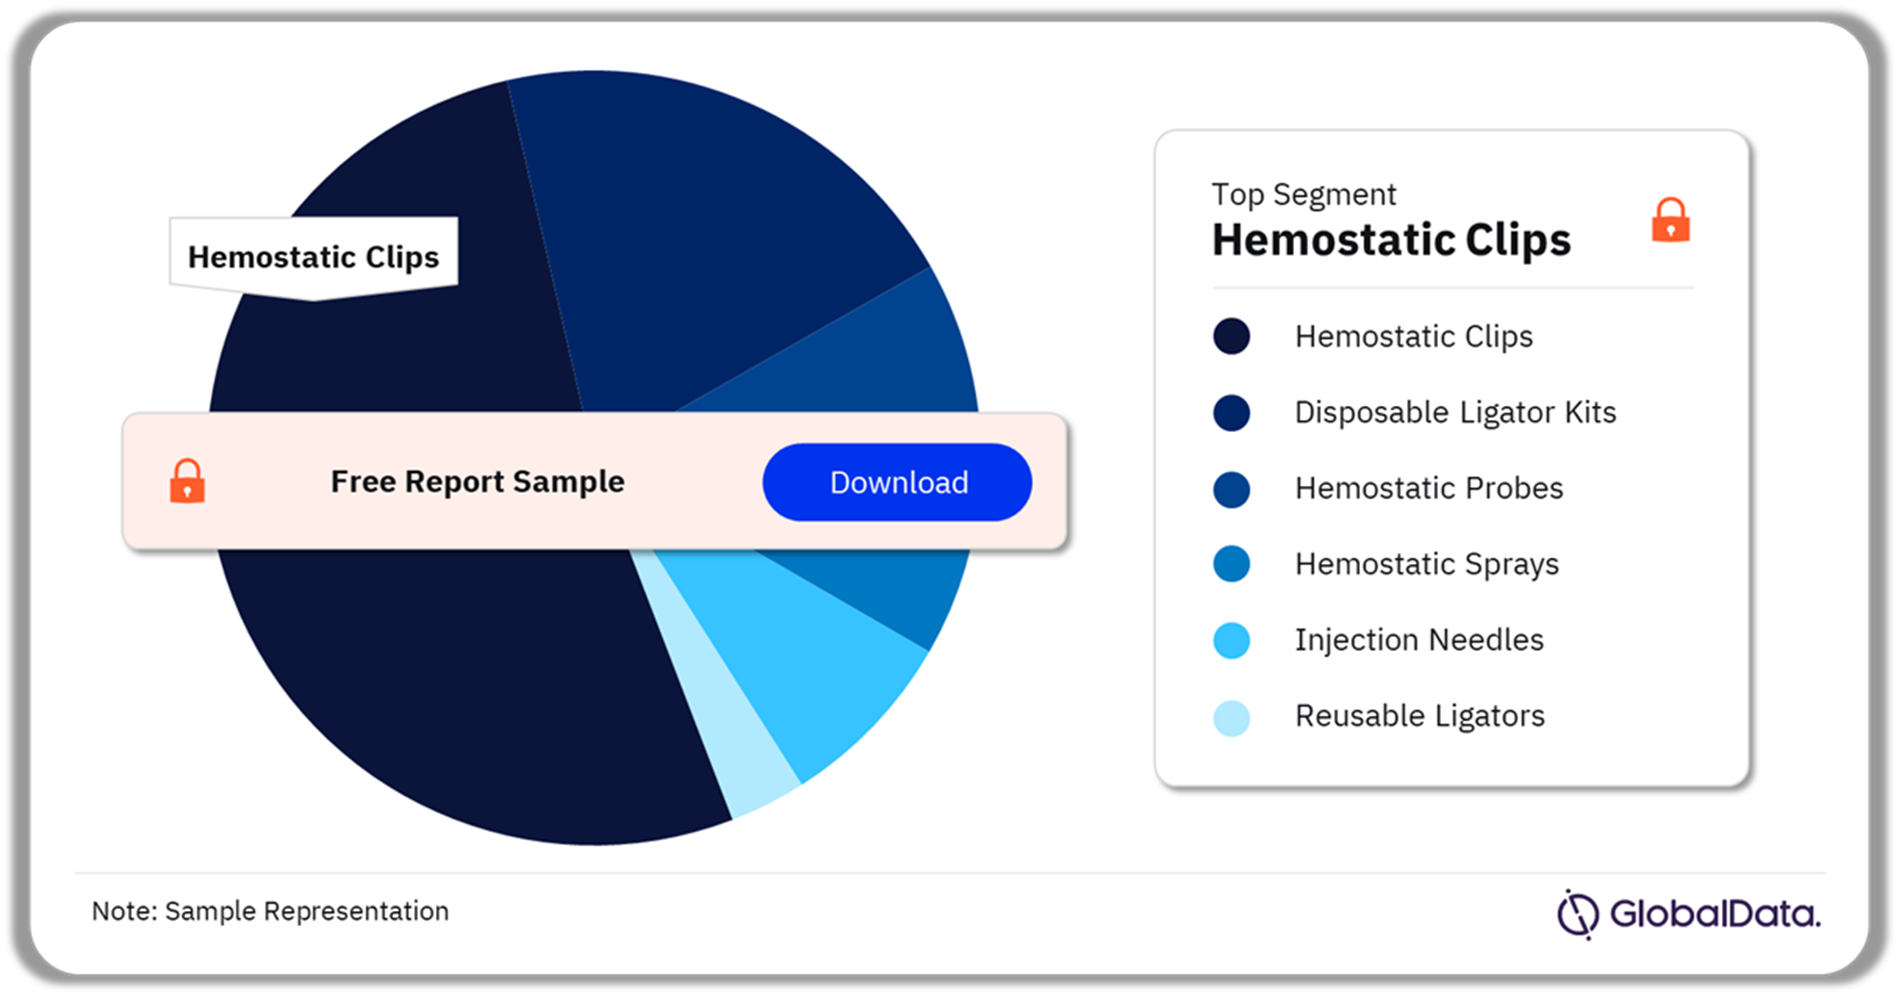 Endoscopic Hemostasis Devices Market Analysis by Segments, 2023 (%)